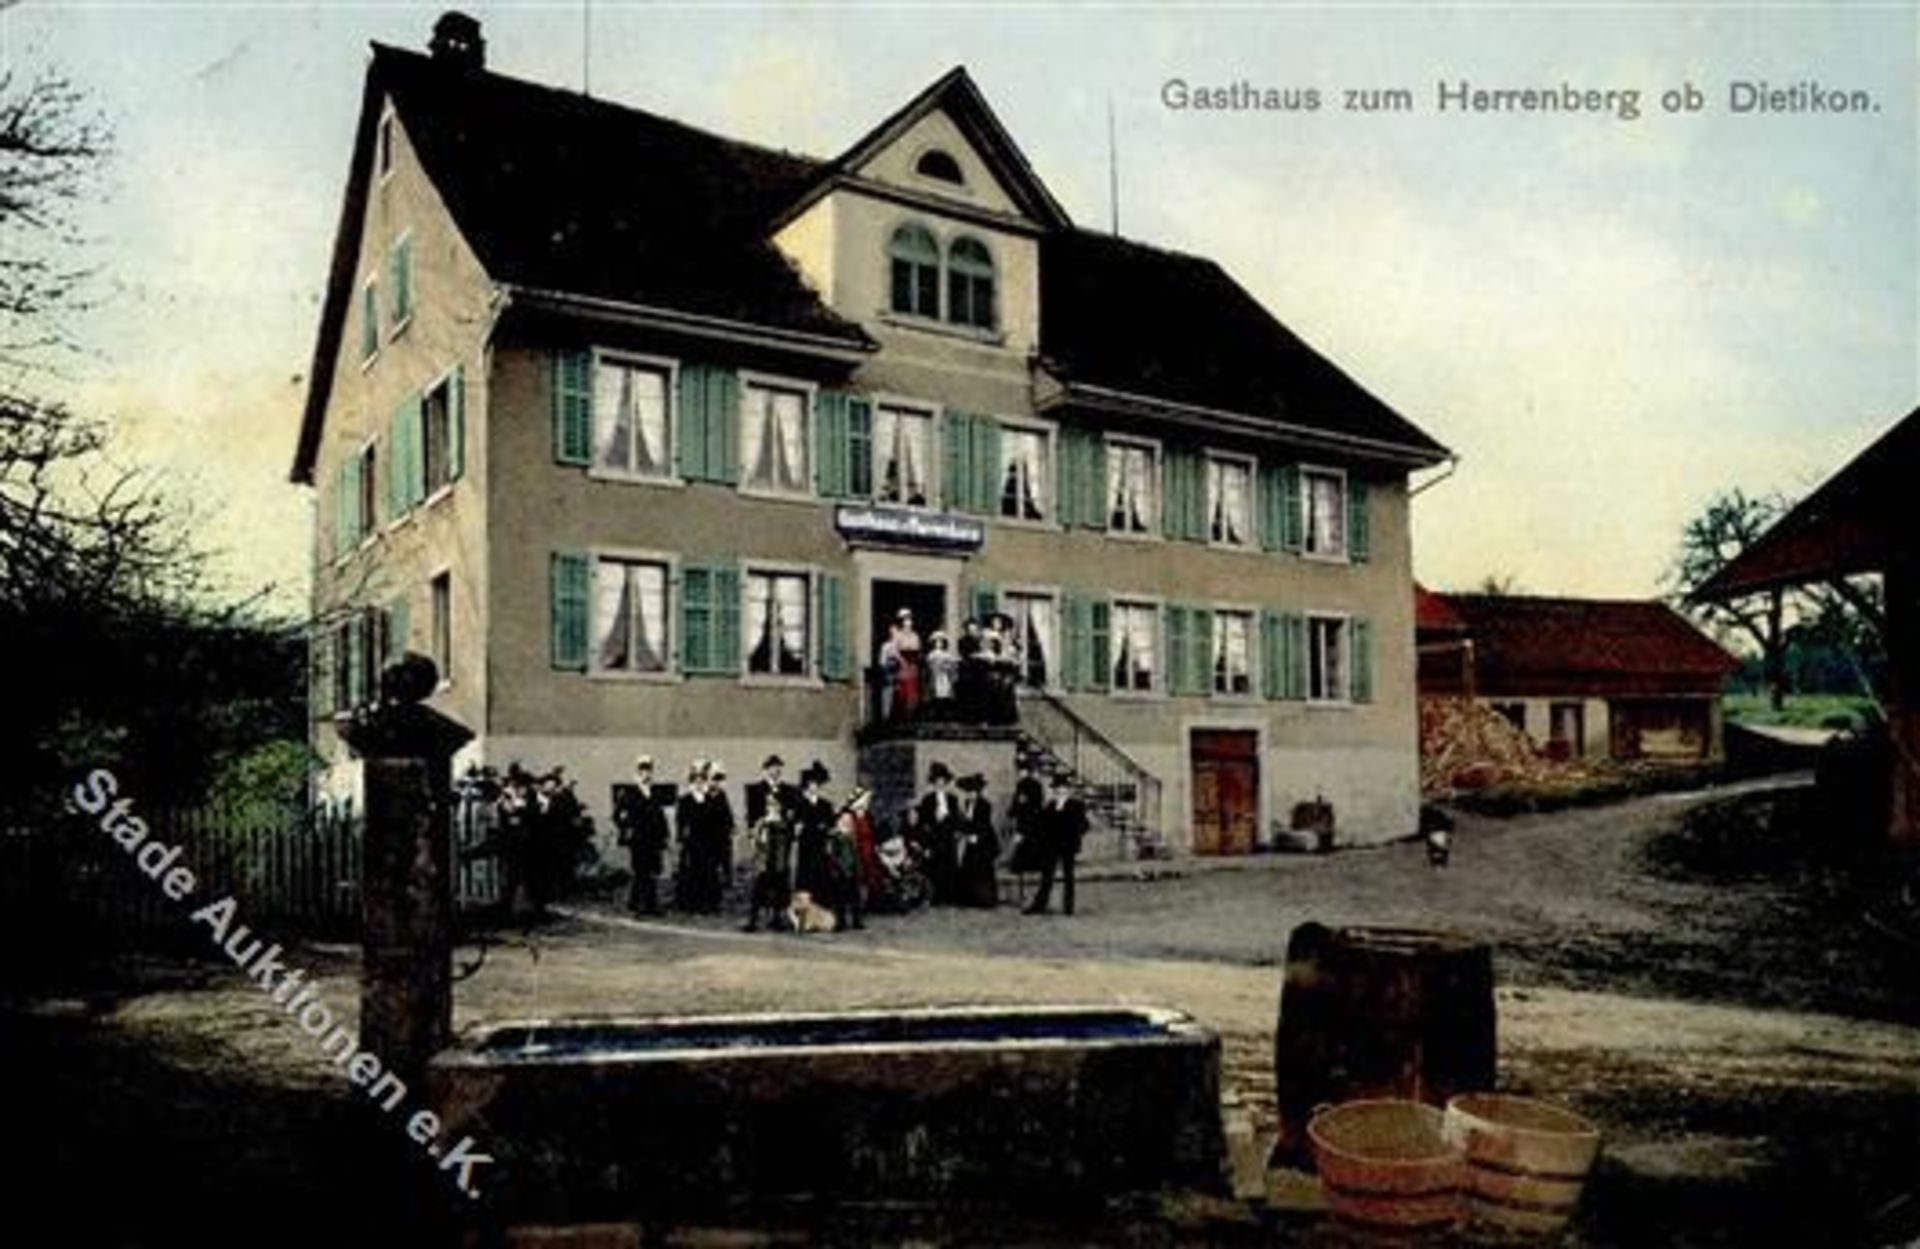 Dietikon (8953) Schweiz Gasthaus zum Herrenberg 1917 II (Stauchung)Dieses Los wird in einer online-